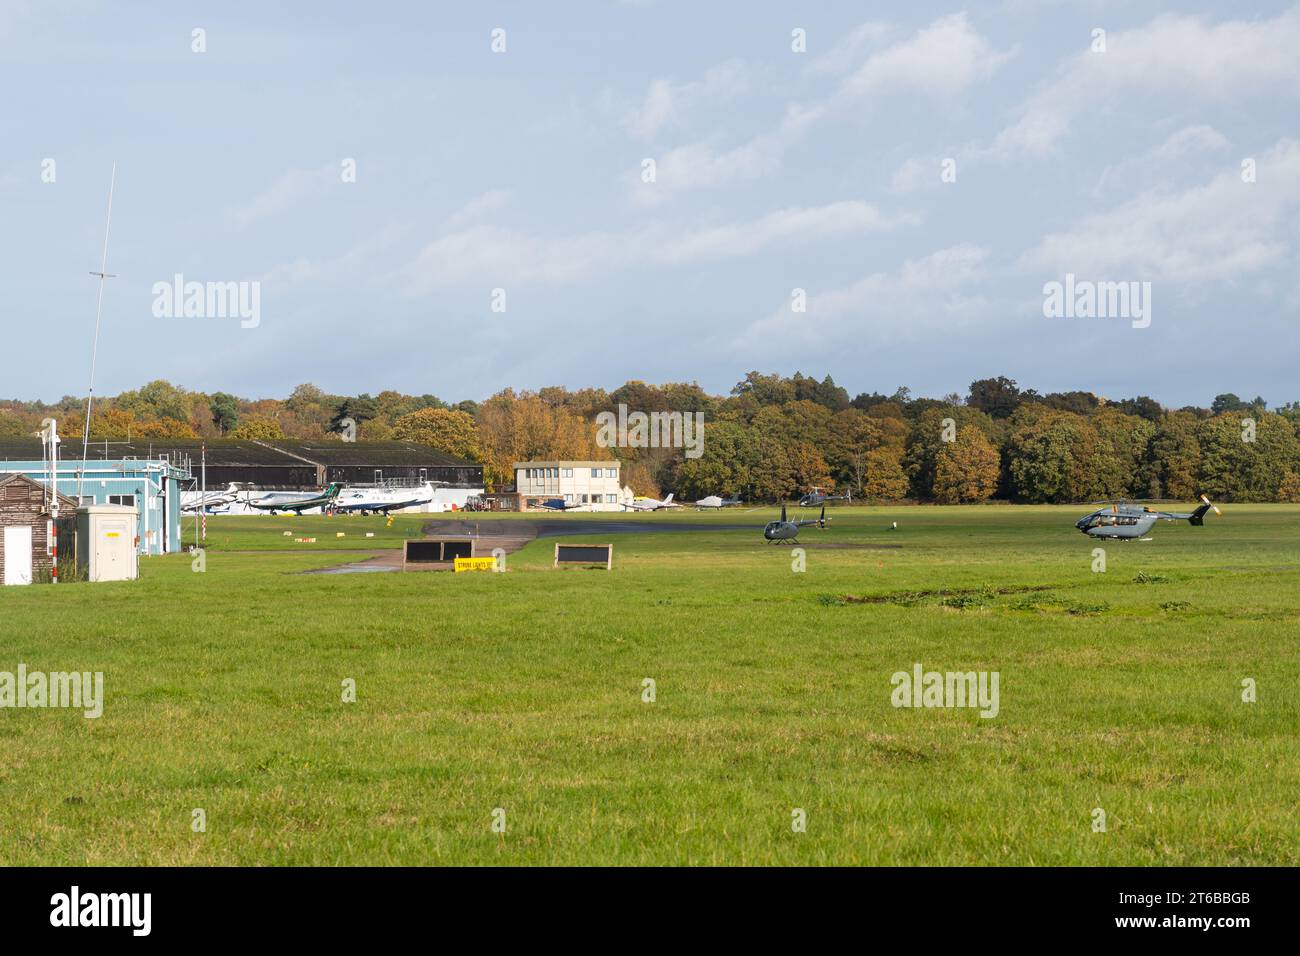 Fairoaks Airport dans le Surrey, Angleterre, Royaume-Uni, avec des hélicoptères et des avions avions avions Banque D'Images